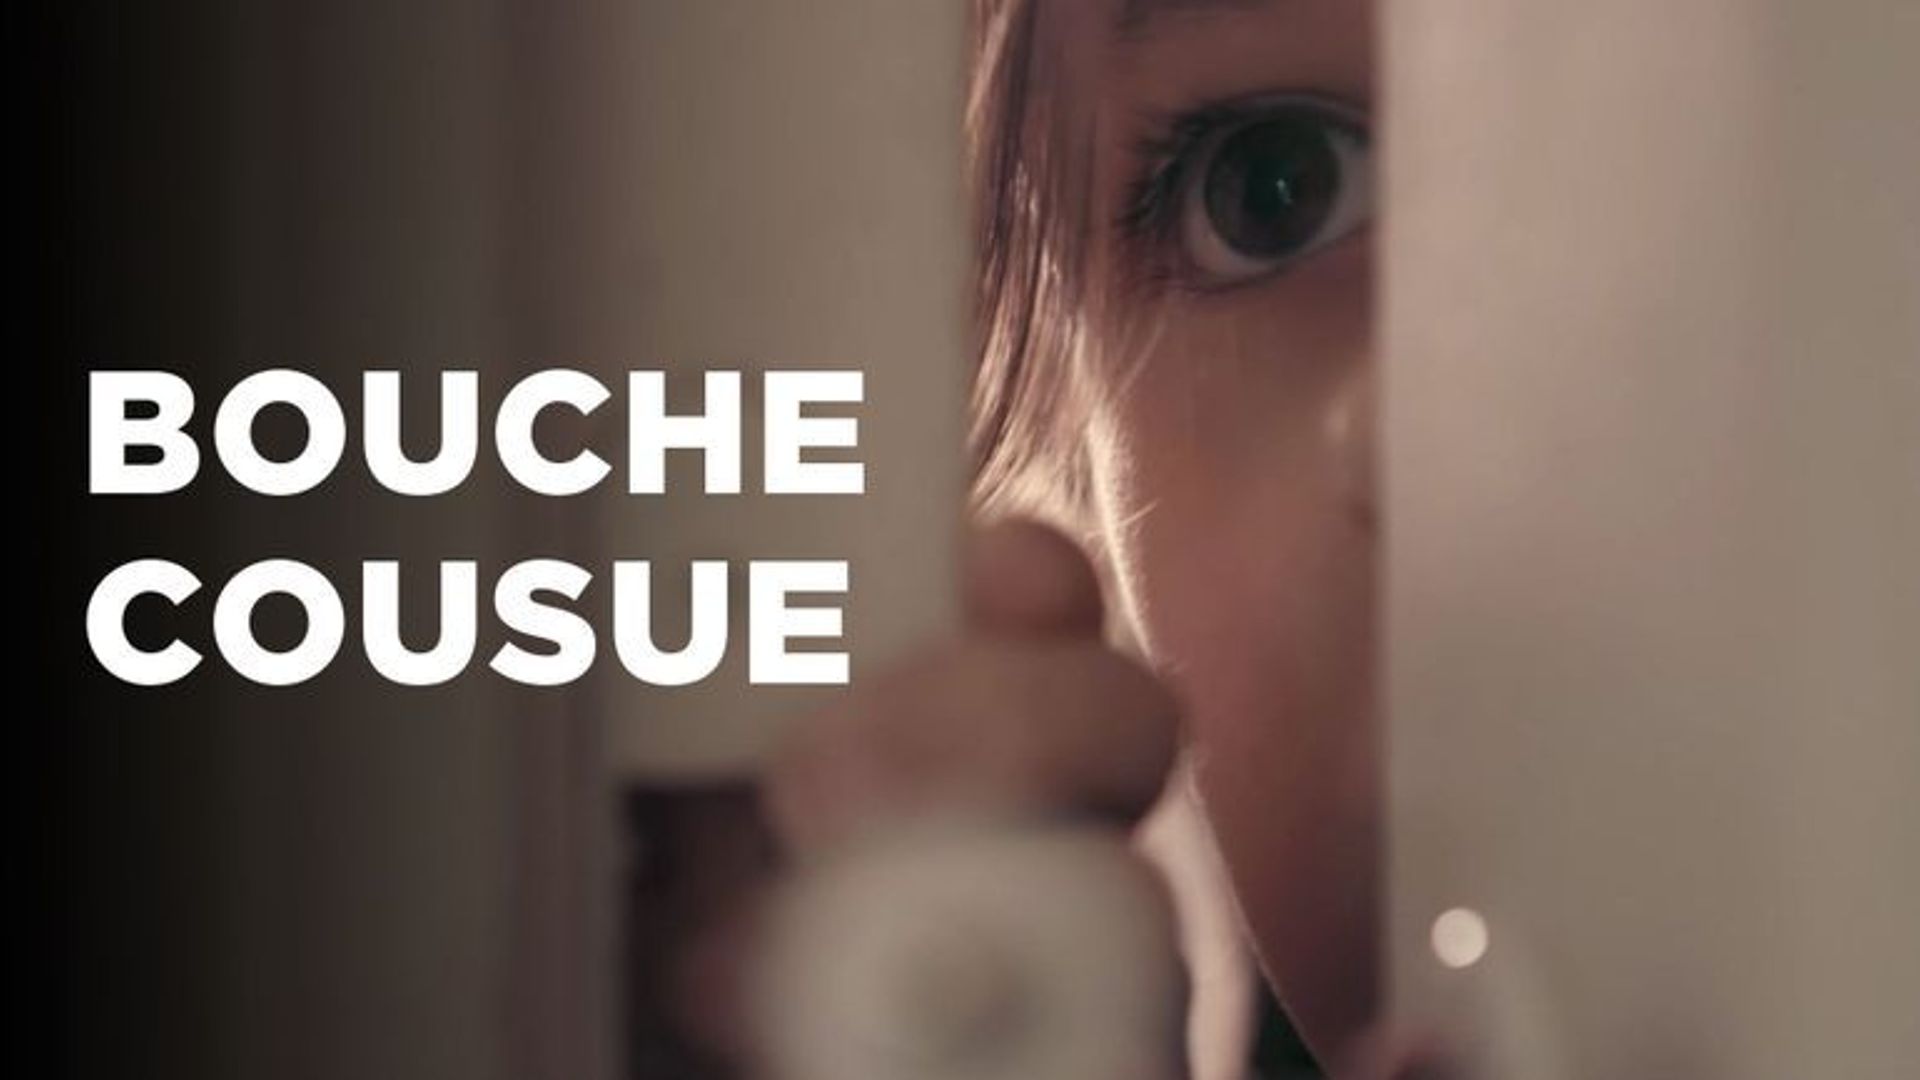 Affiche du documentaire "Bouche cousue" de Karine Dusfour sur les violences infligées aux enfants.